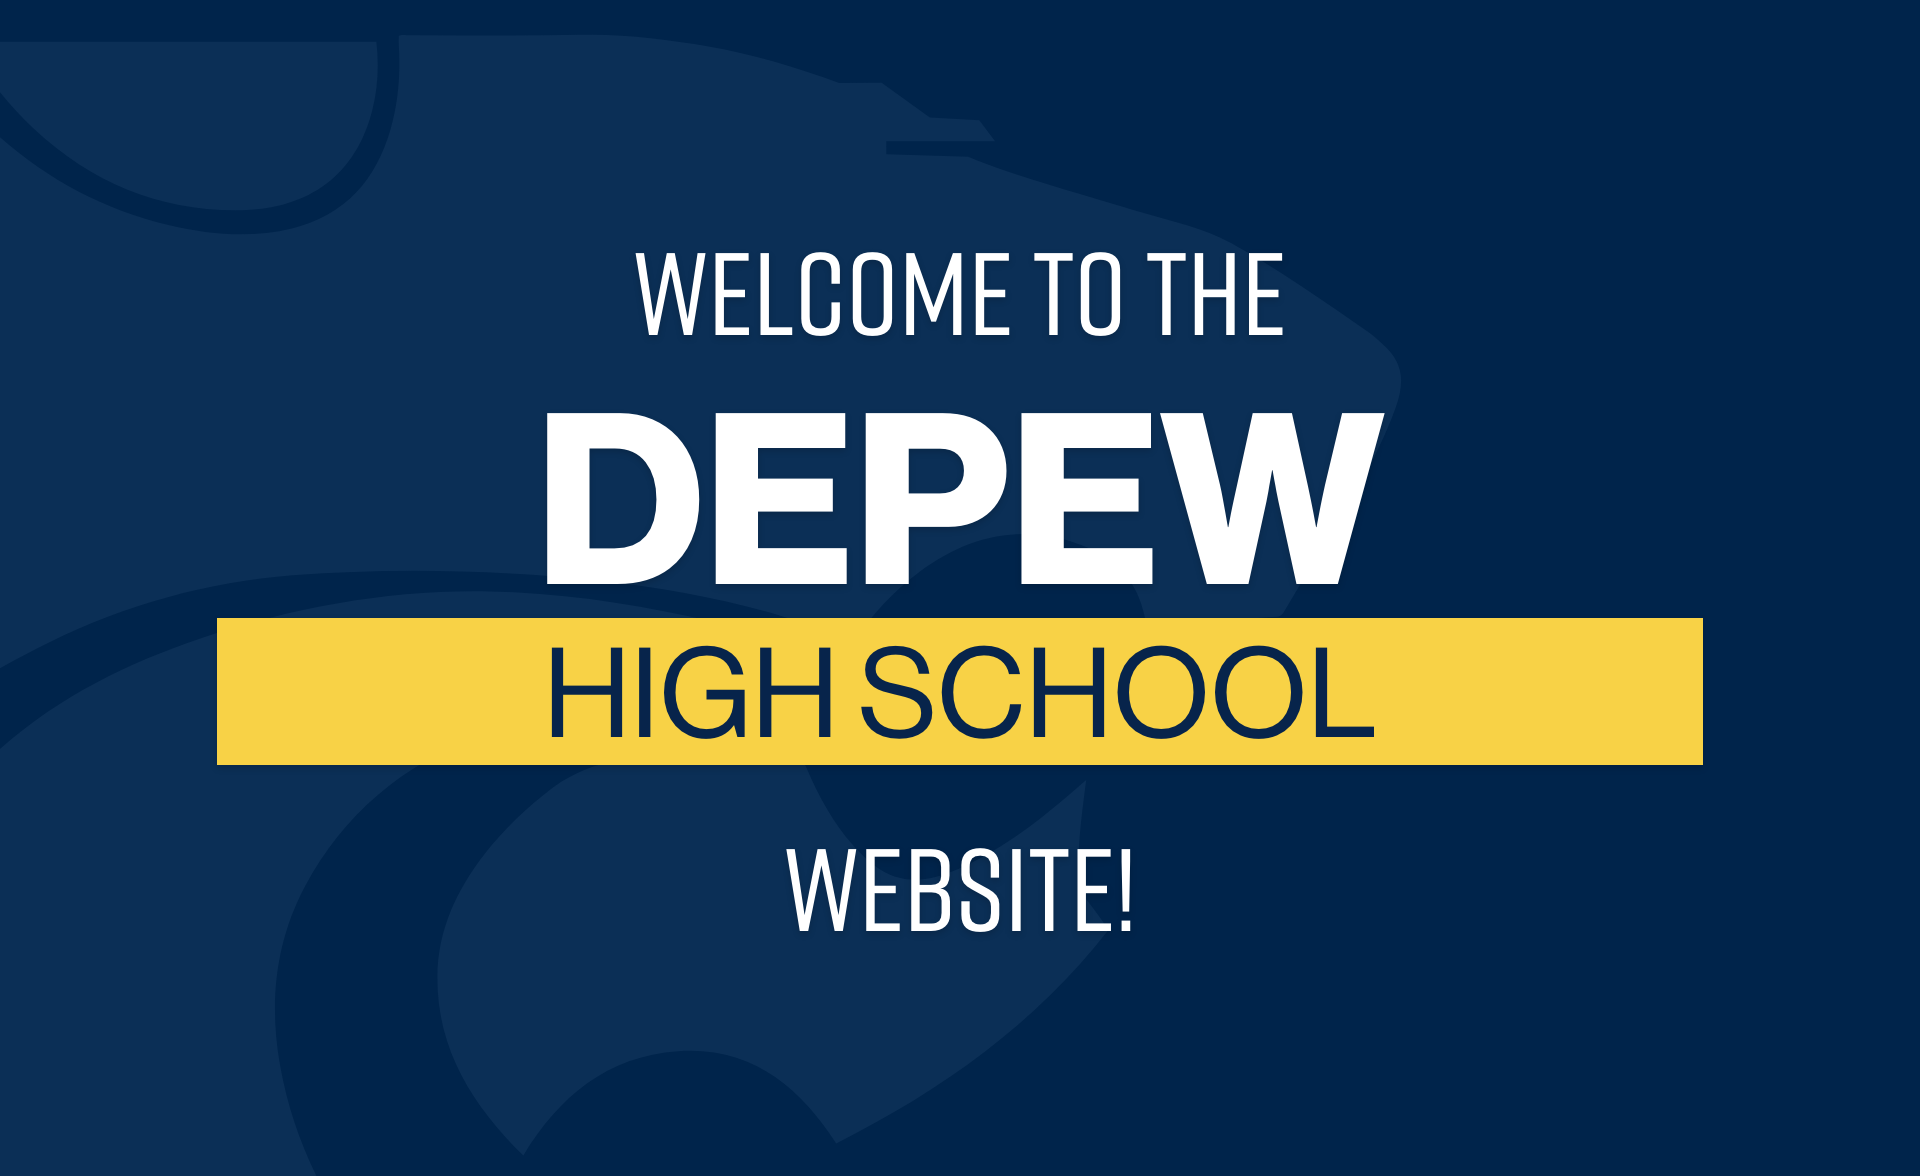 Welcome to the Depew High School Website